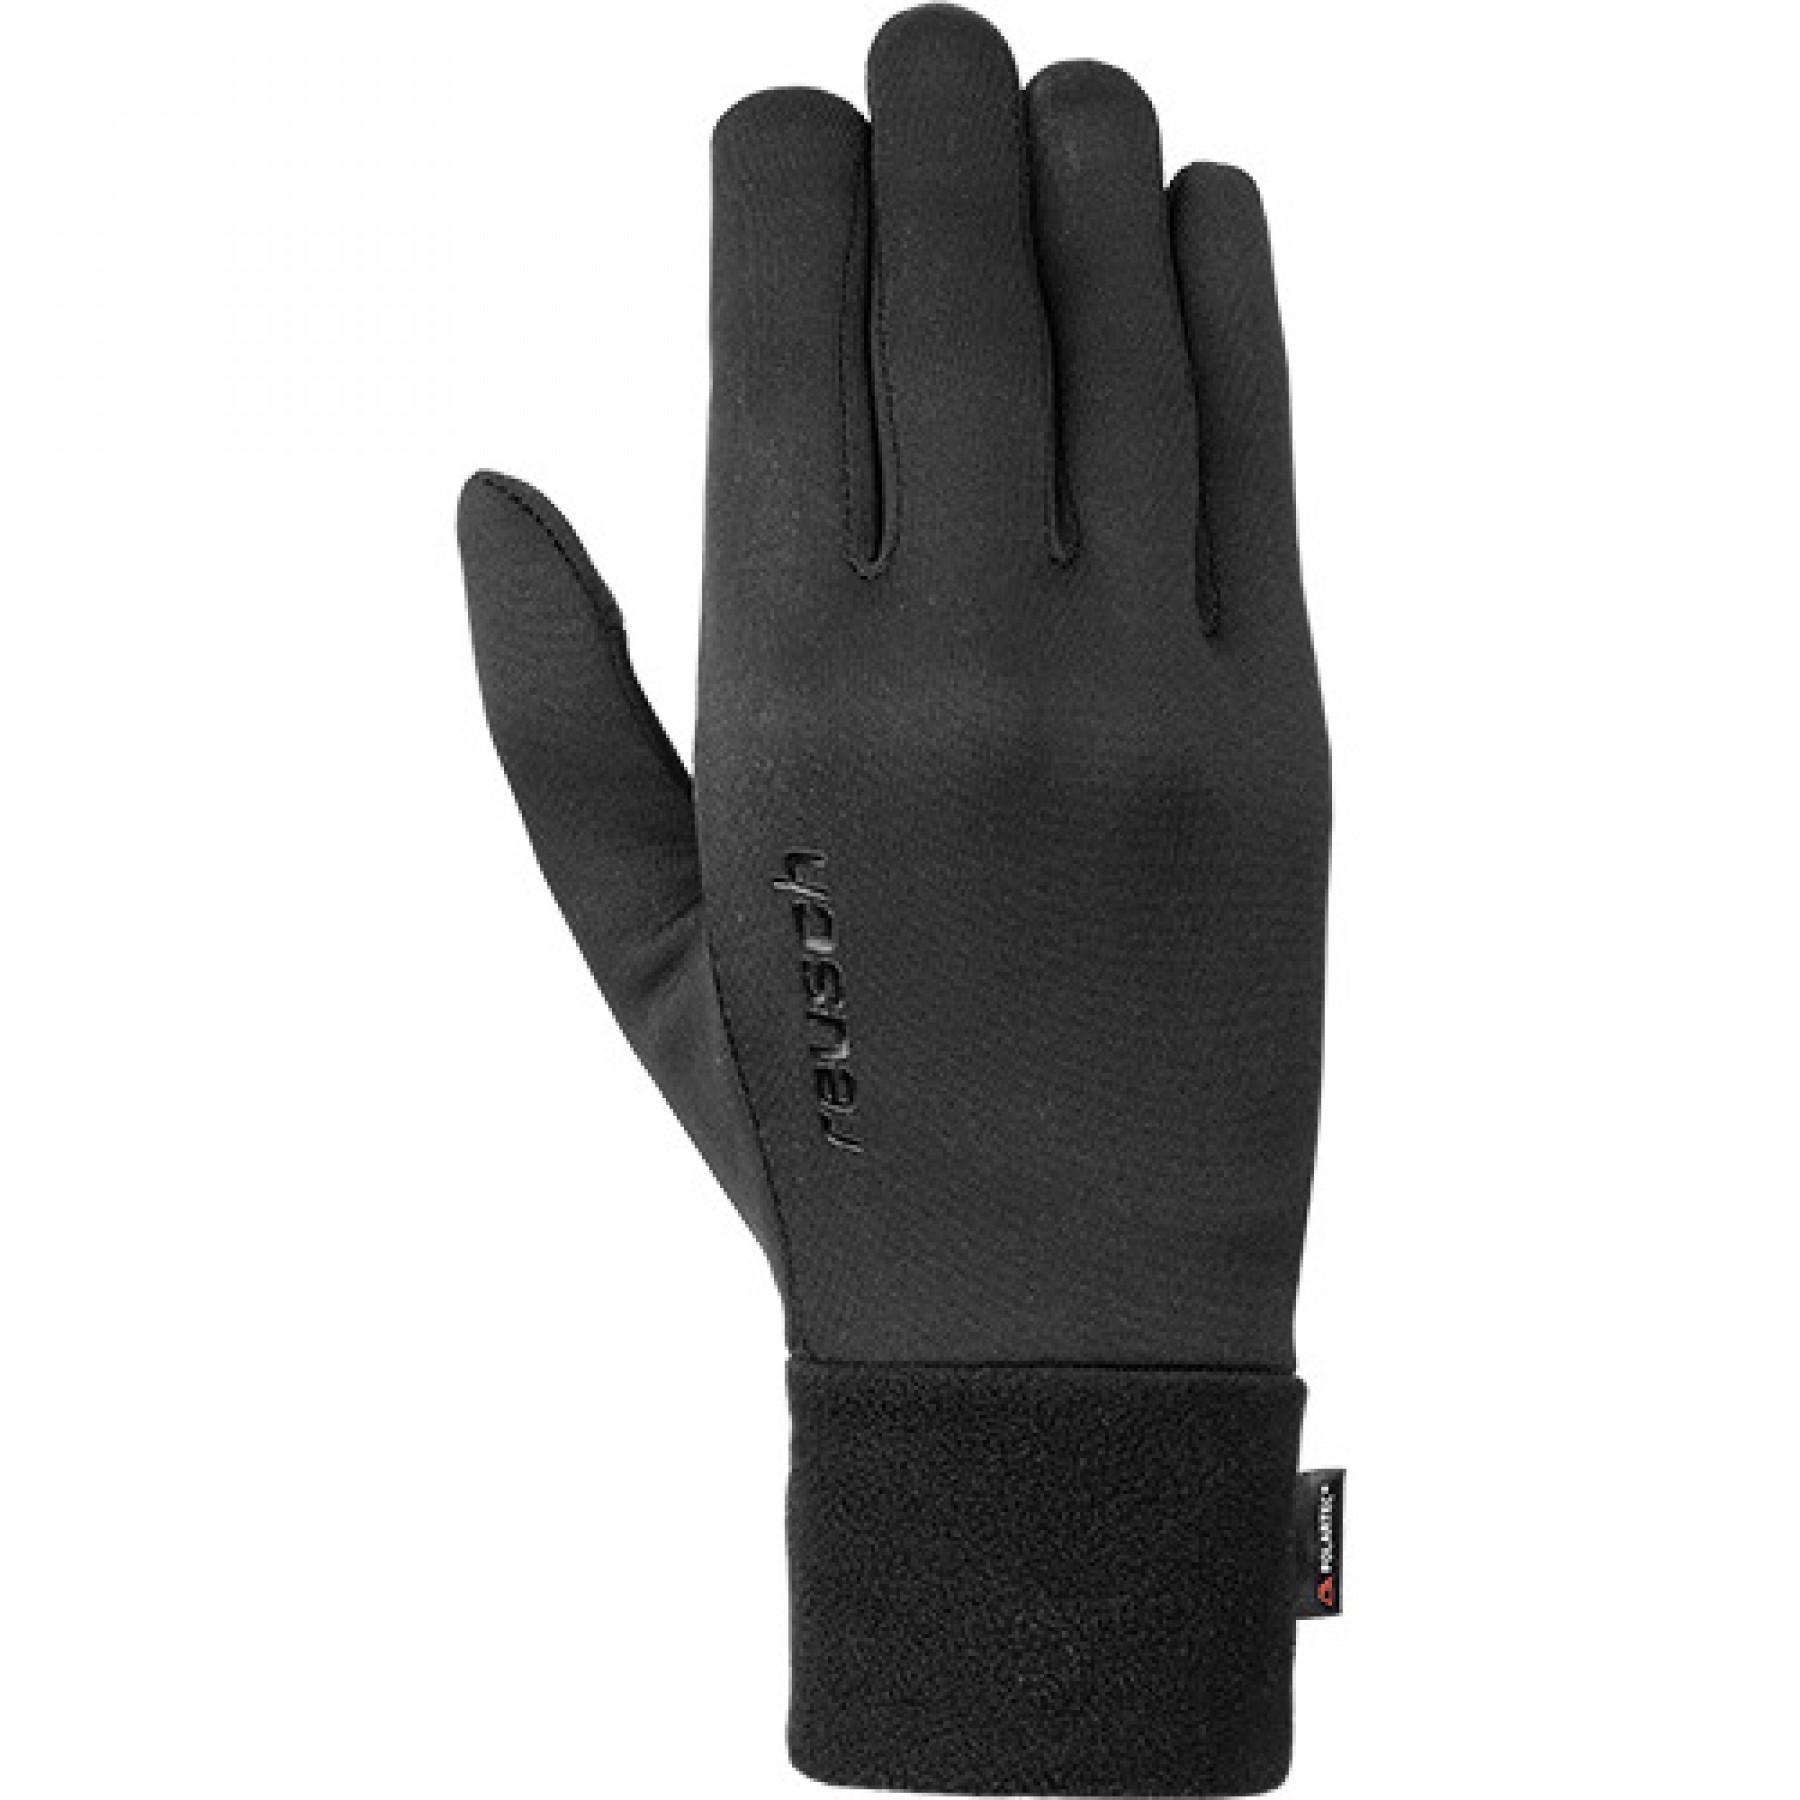 Handschuhe Reusch Power Stretch® Touch-tec